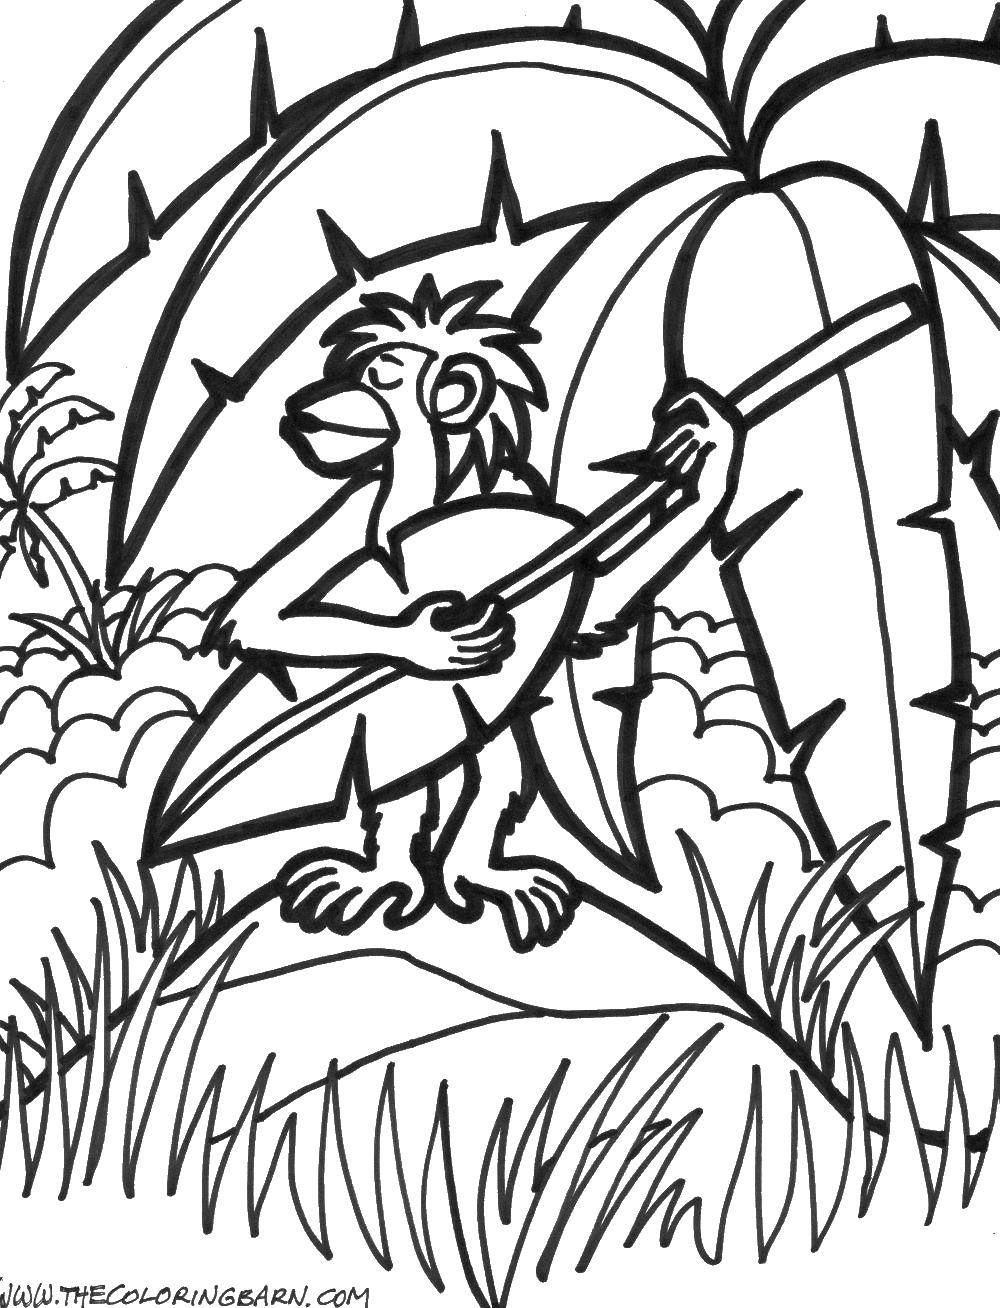 Раскраска с изображением музыкальной обезьяны (обезьяна, дети)